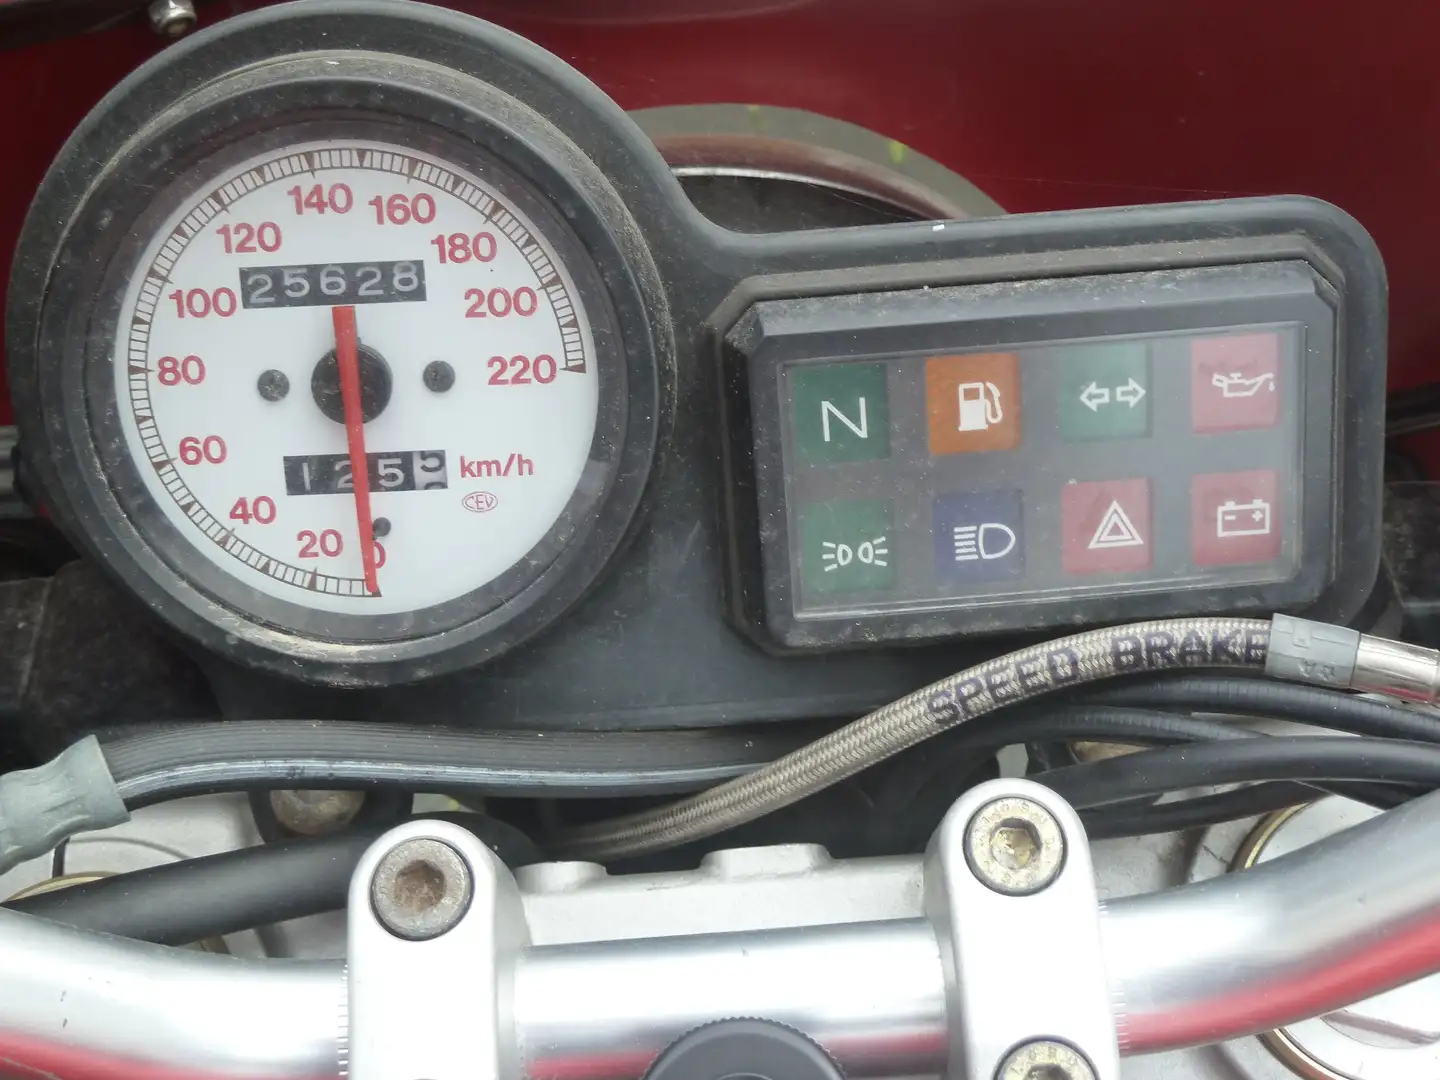 Ducati Monster 600 Red - 2